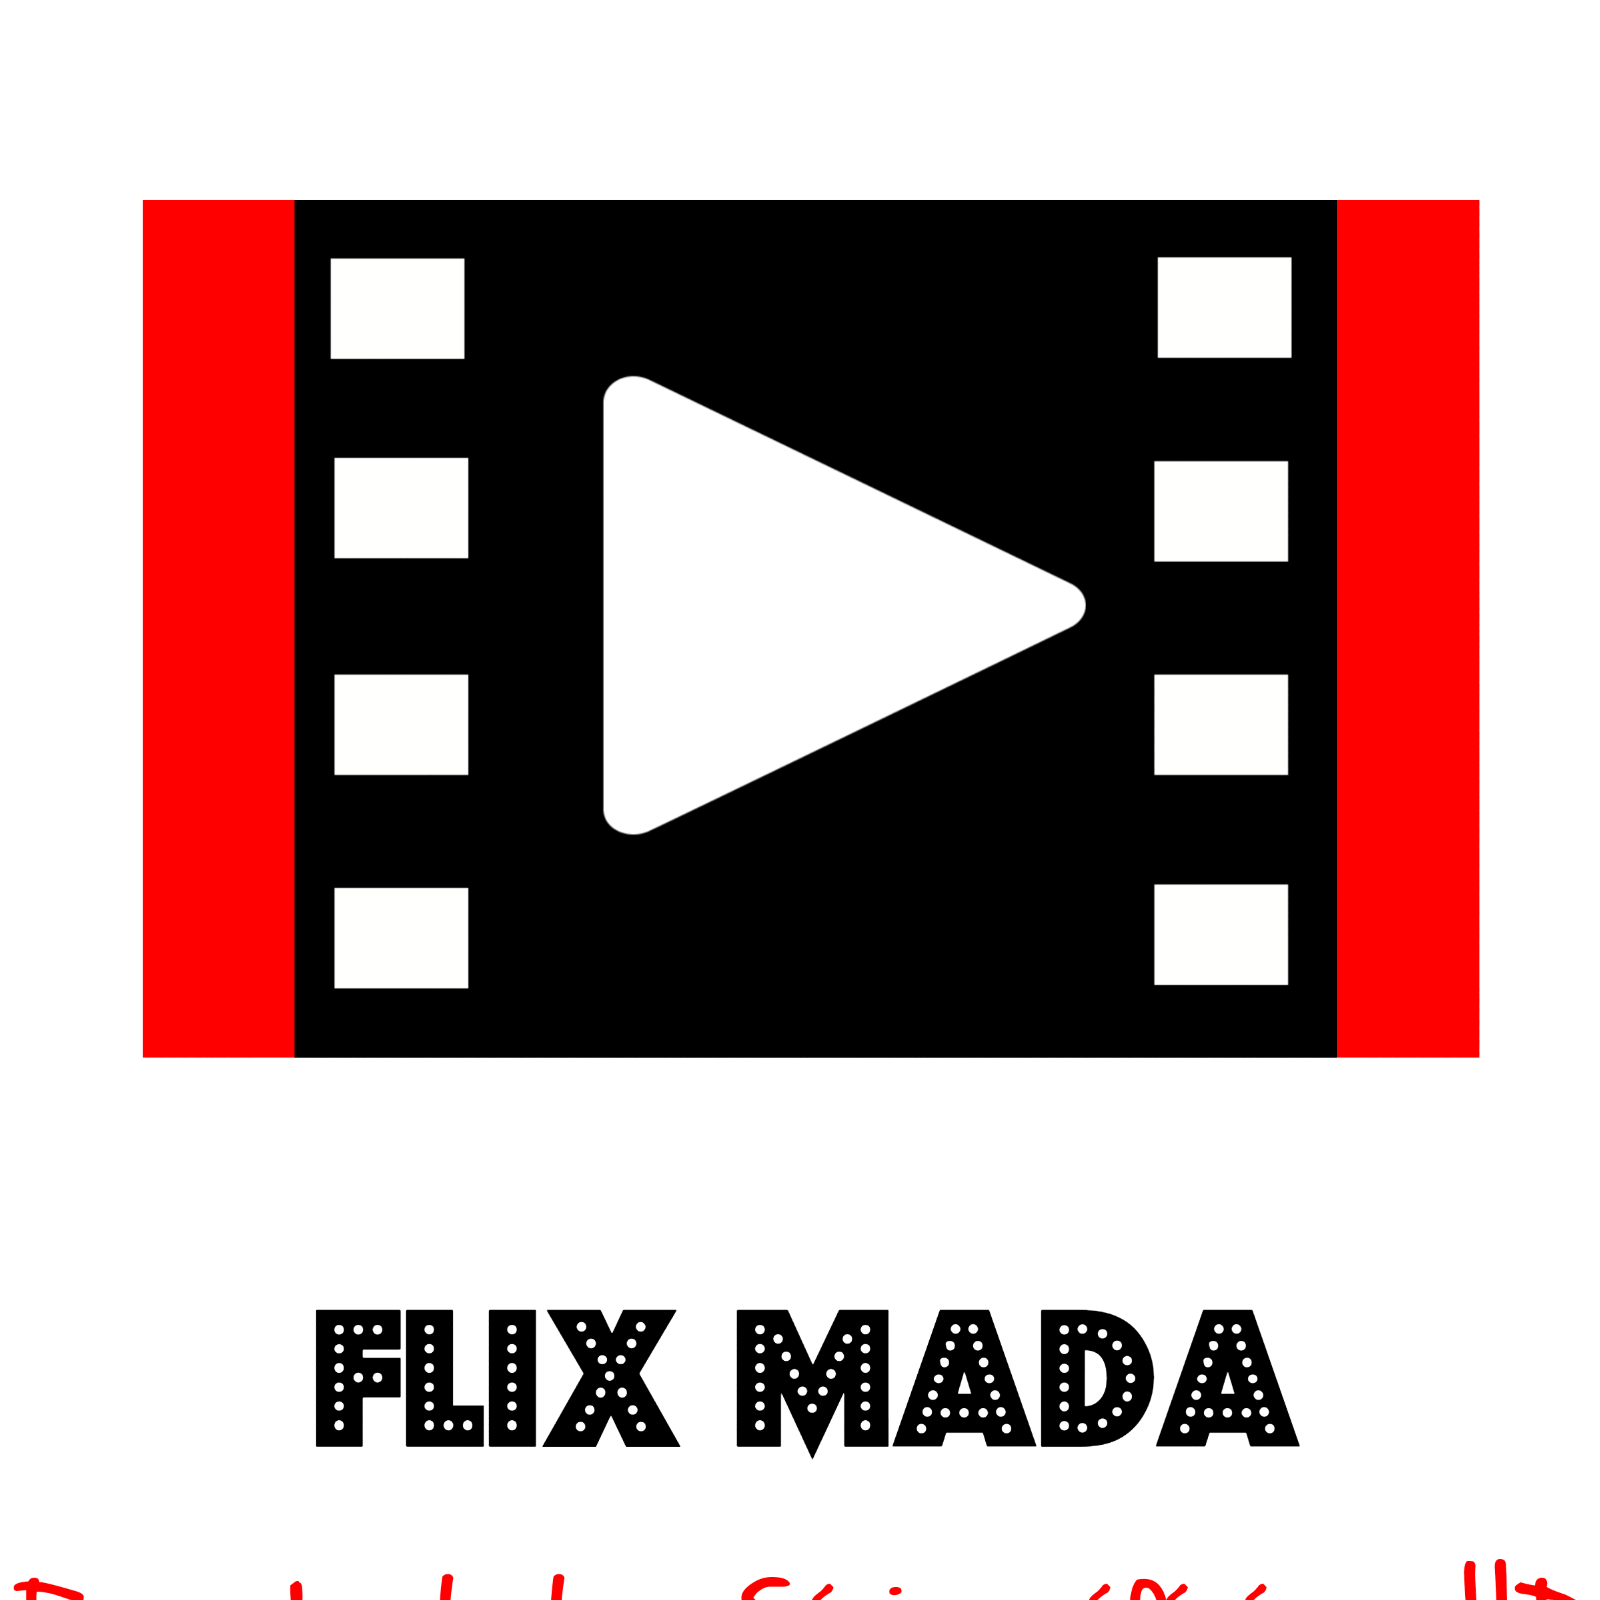 Flix Mada